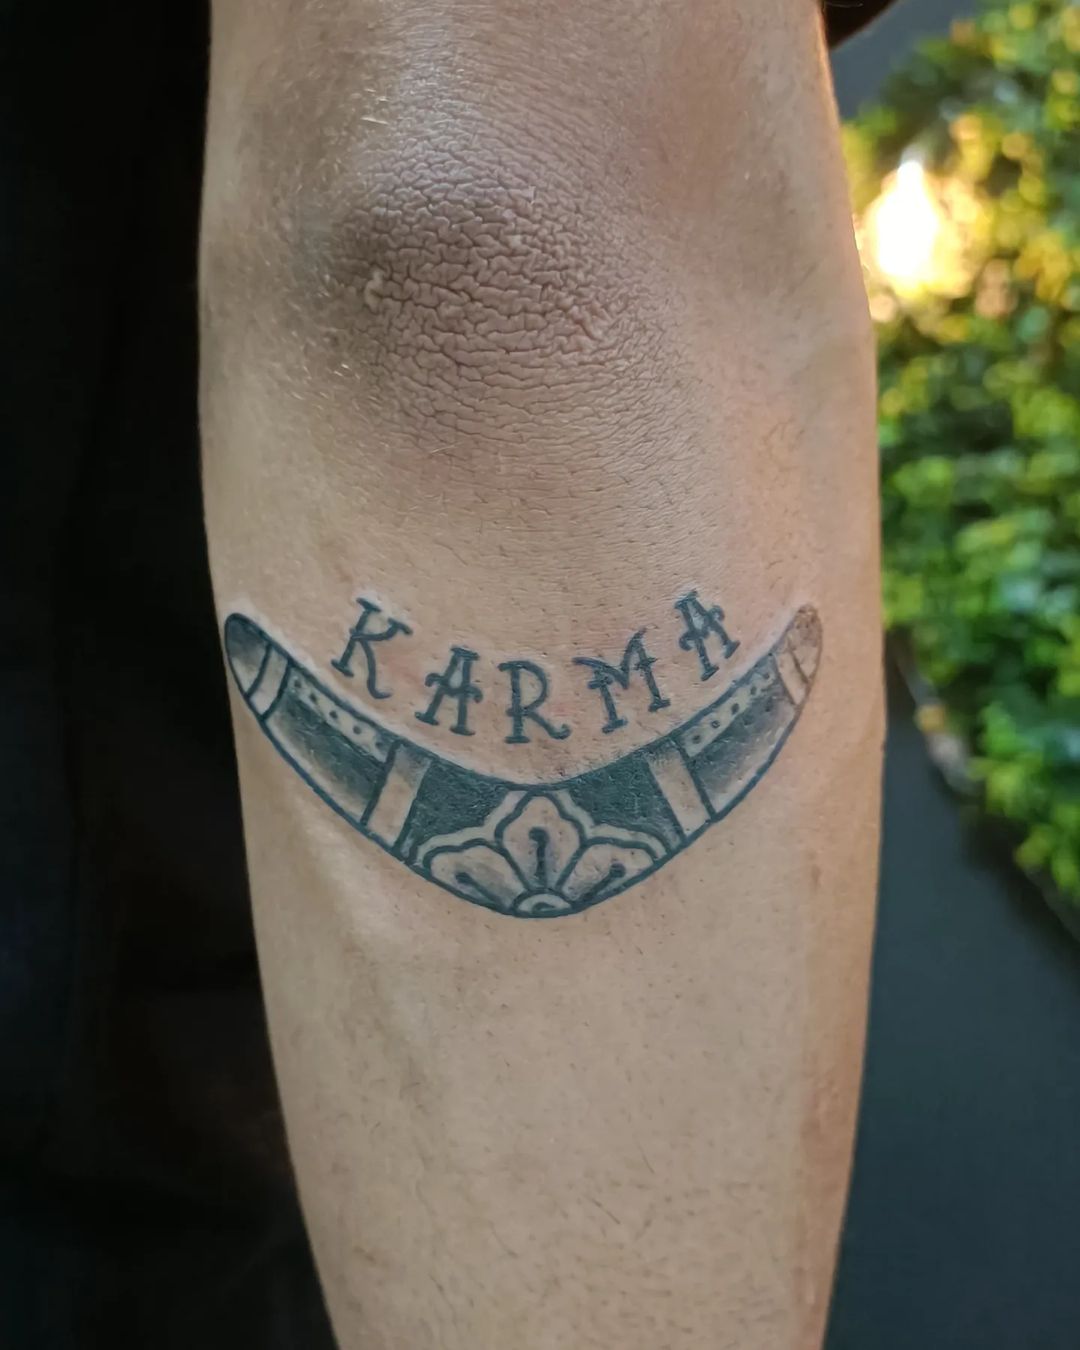 20+ Karma Tattoo Design Ideas - True Good Deeds Bring Good Karma - Tikli